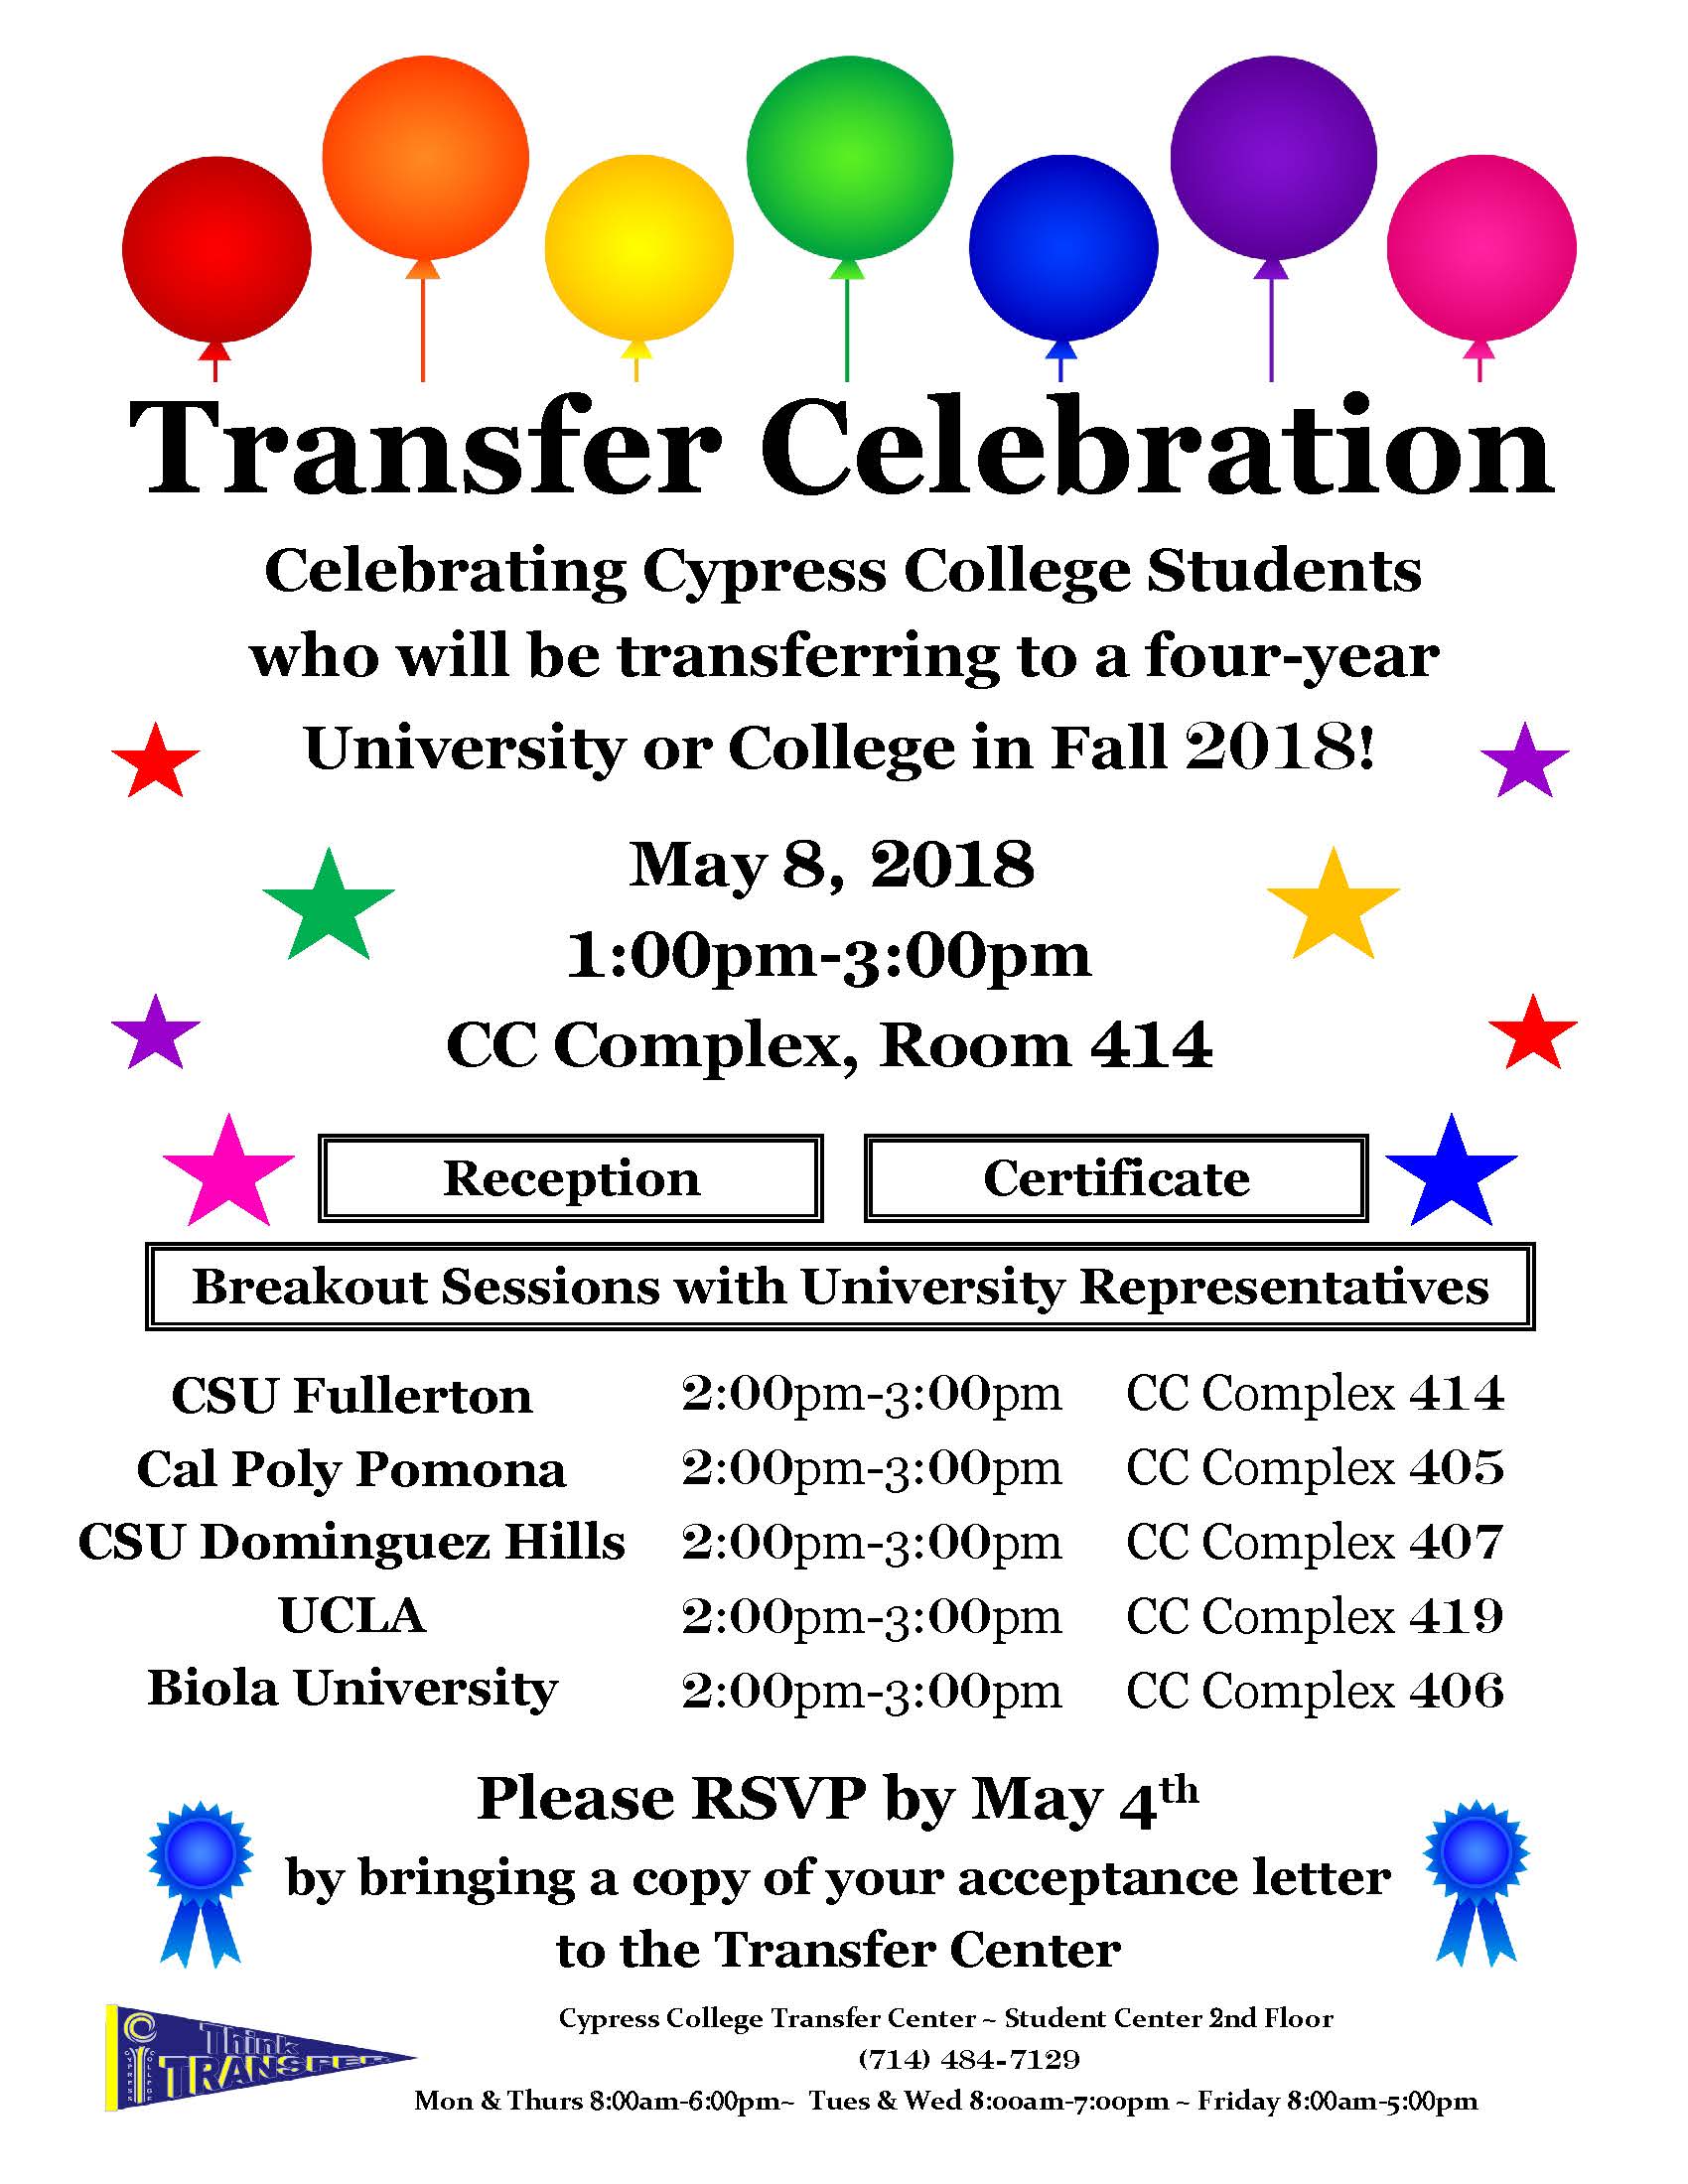 Transfer Celebration flyer